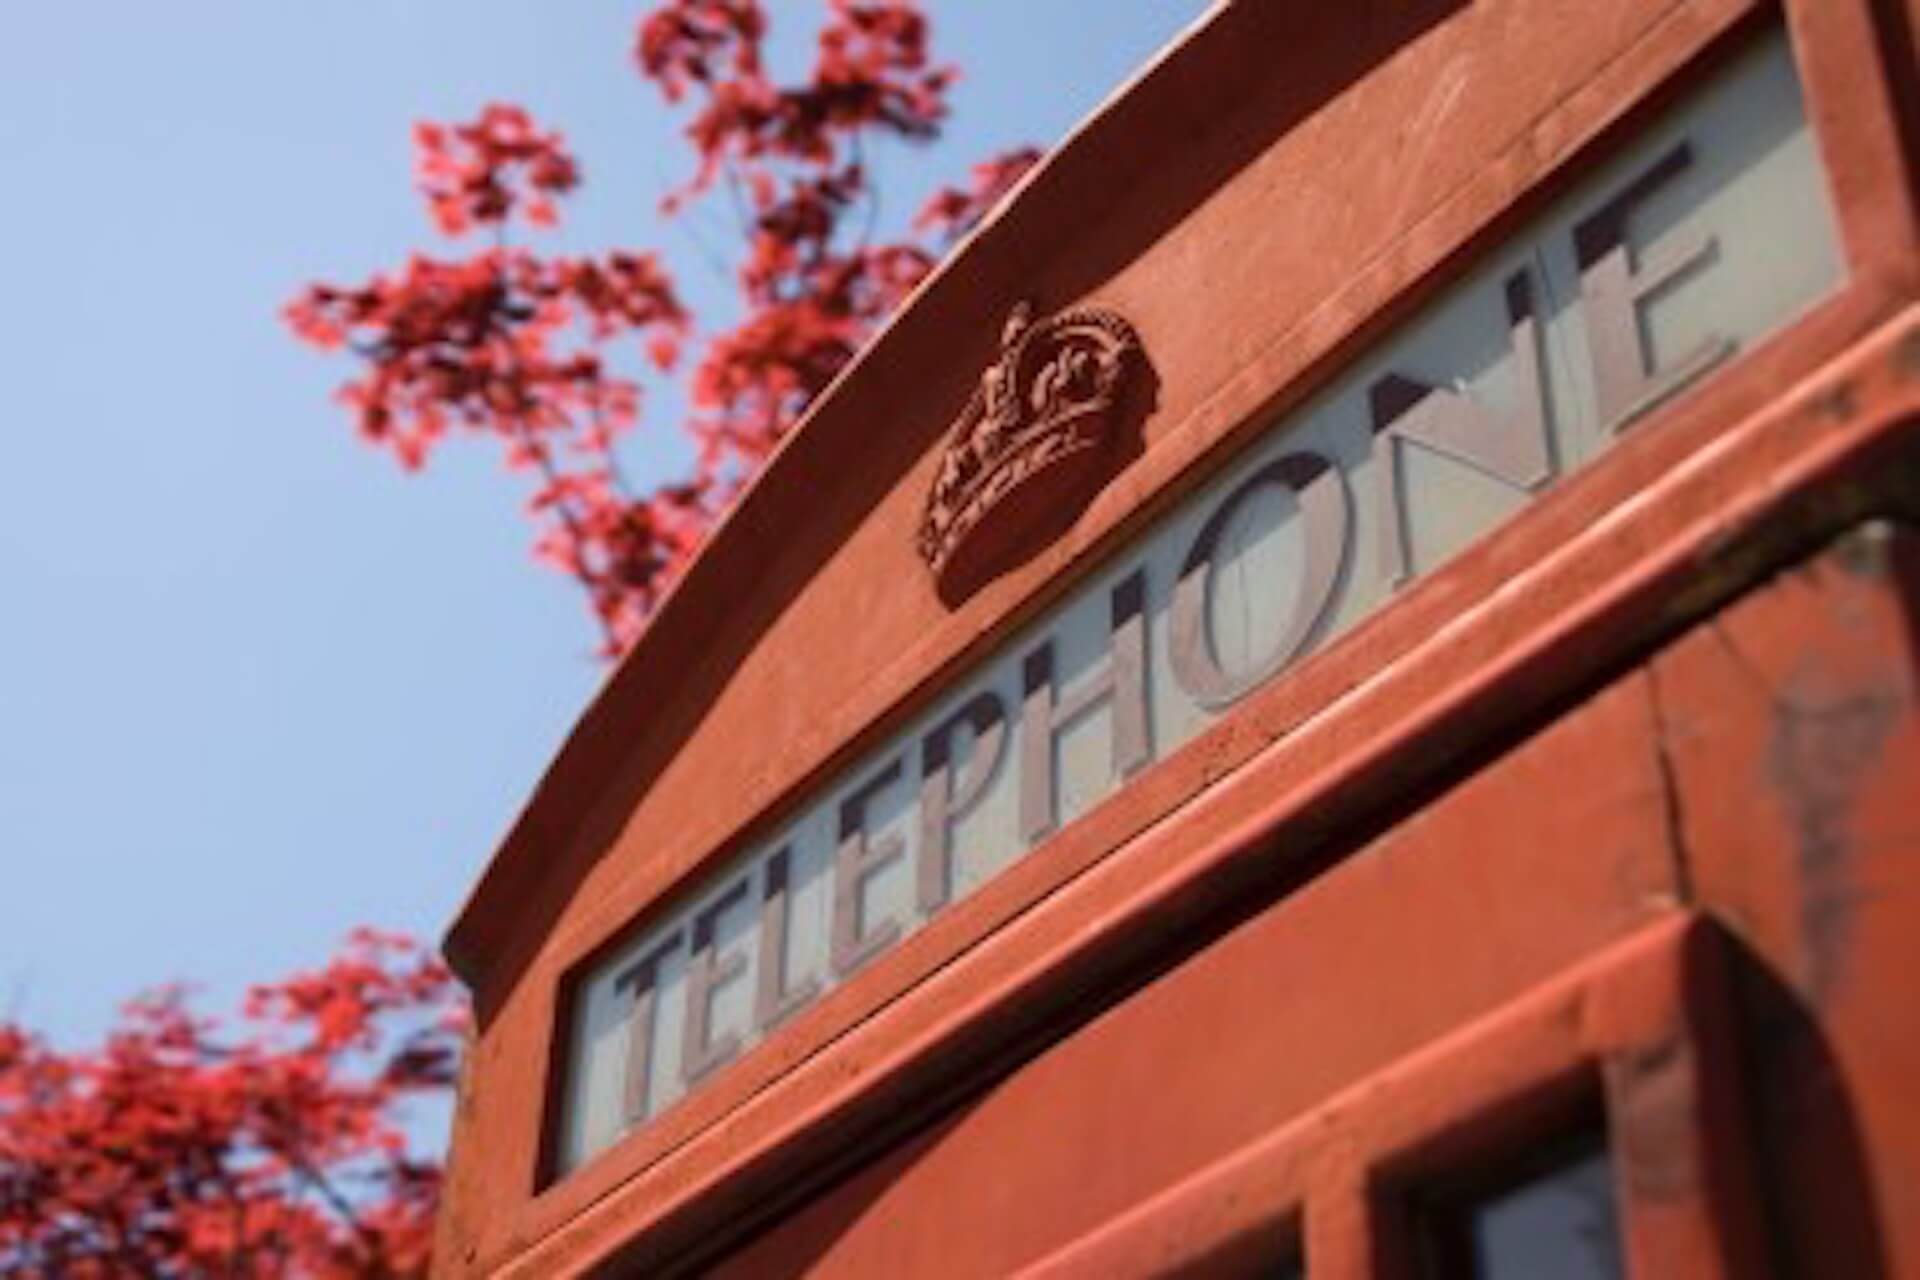 red-british-telephone-box-england-great-britain